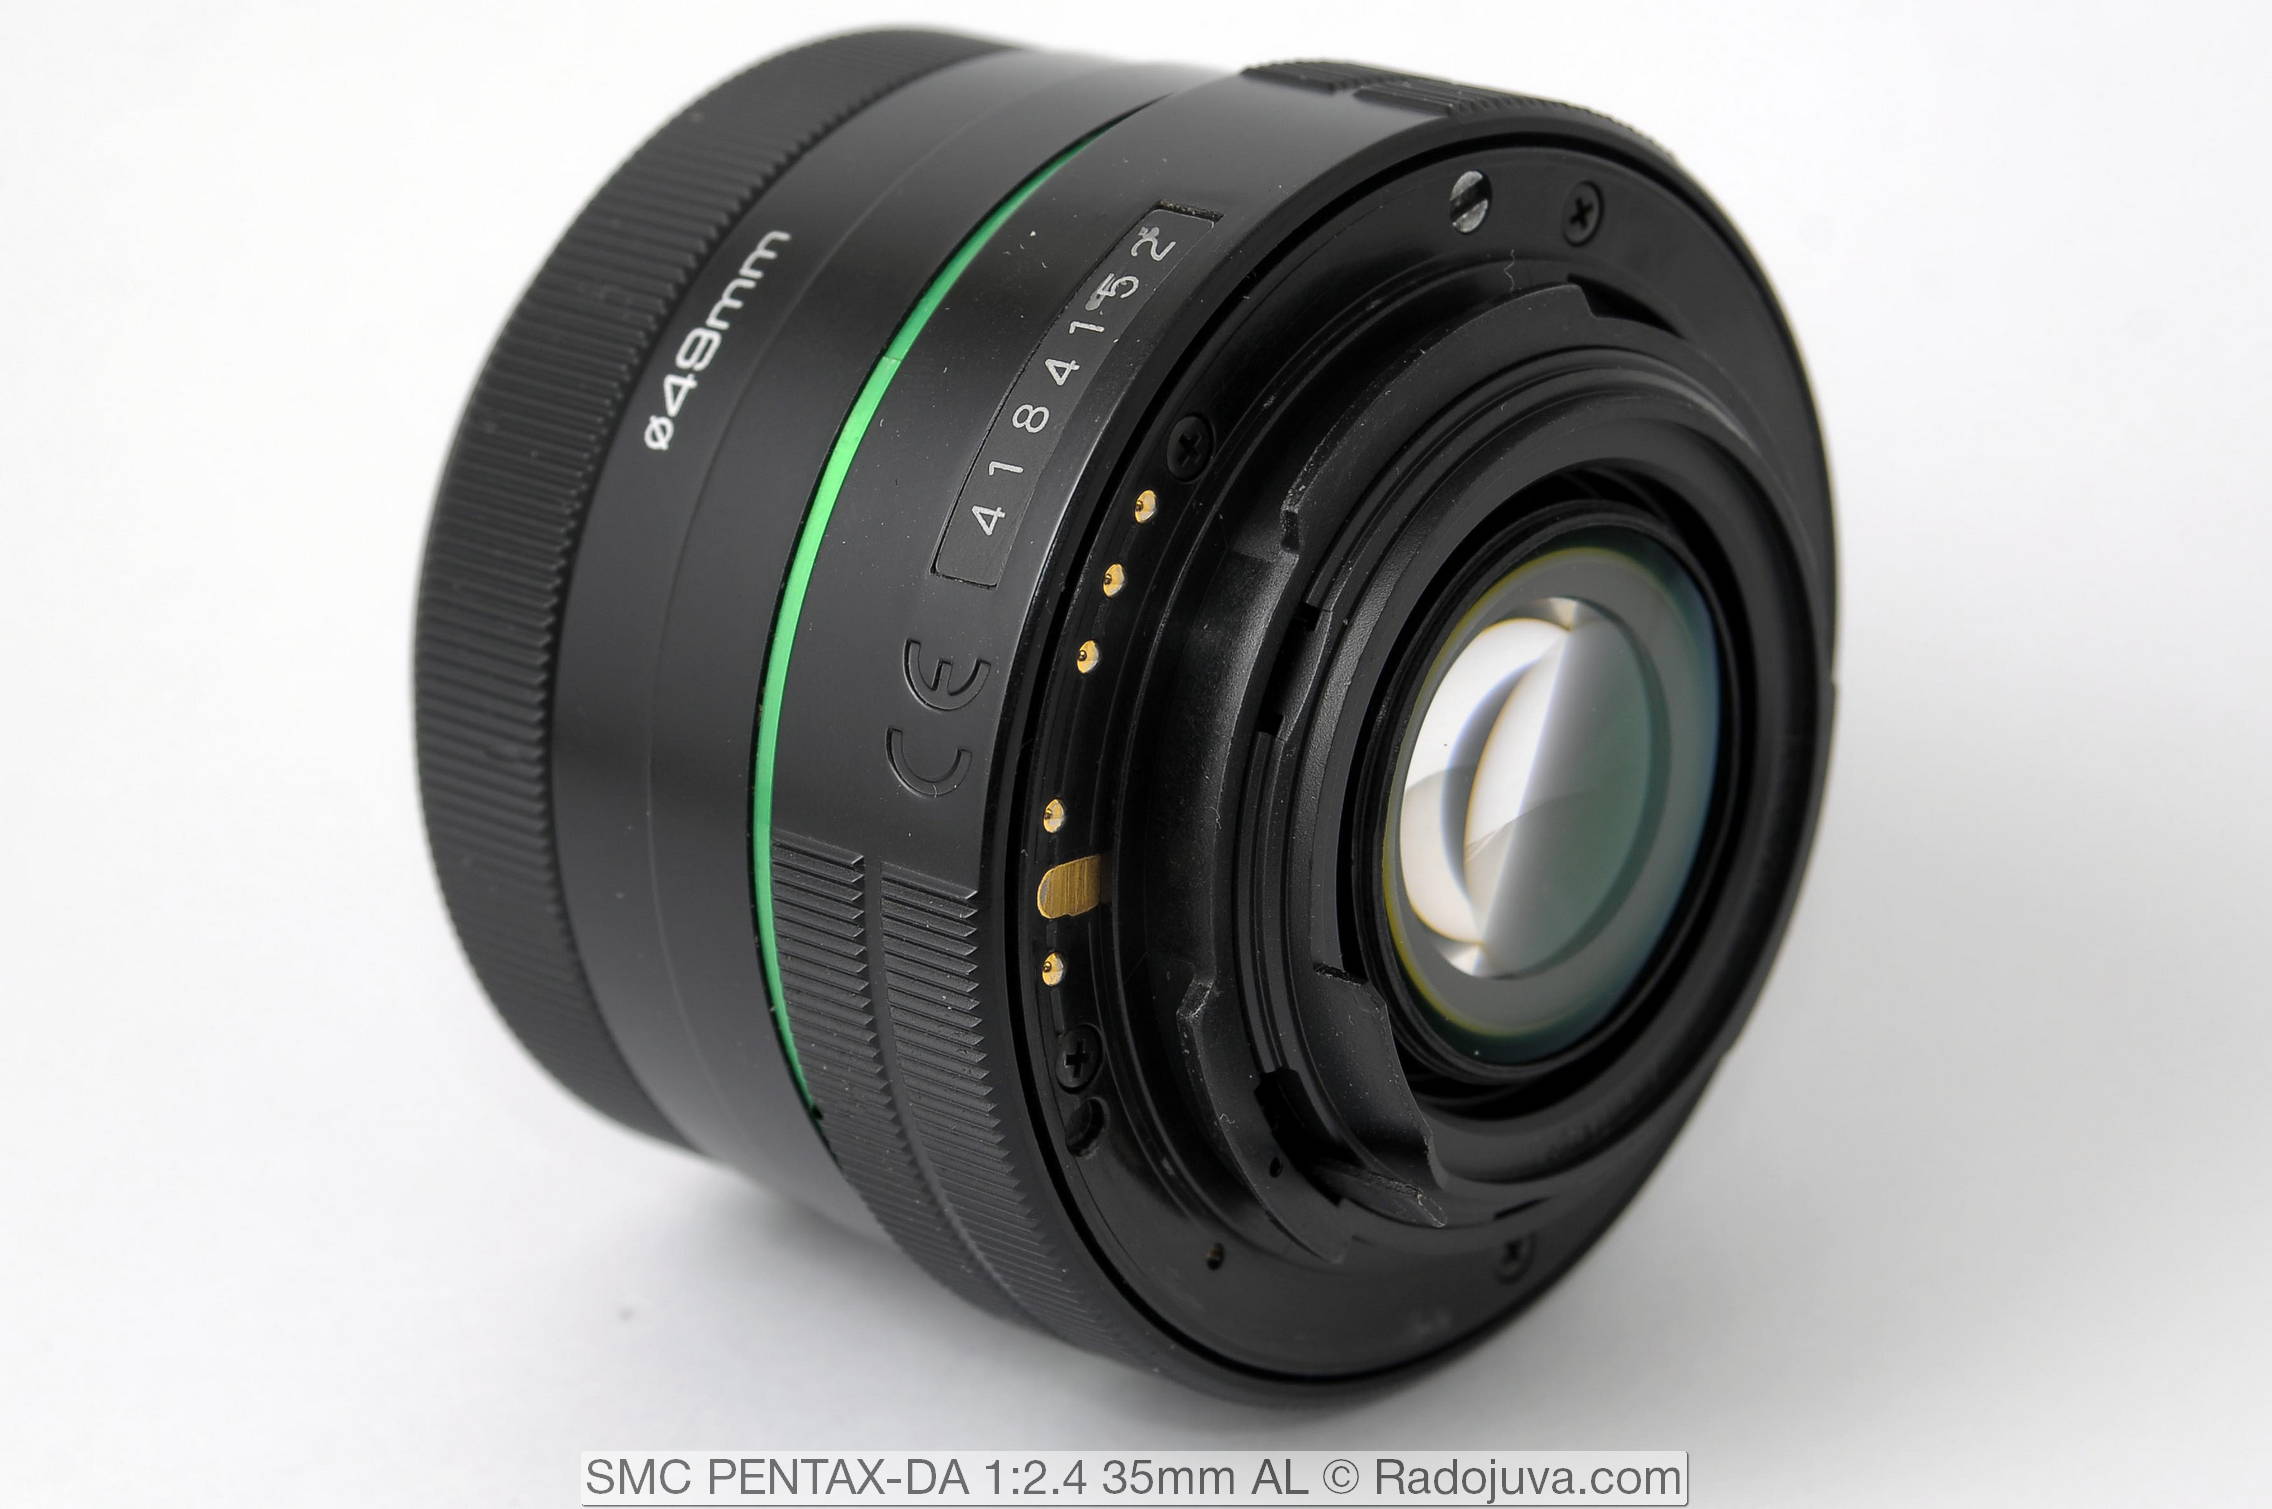 SMC PENTAX-DA 1: 2.4 35mm AL